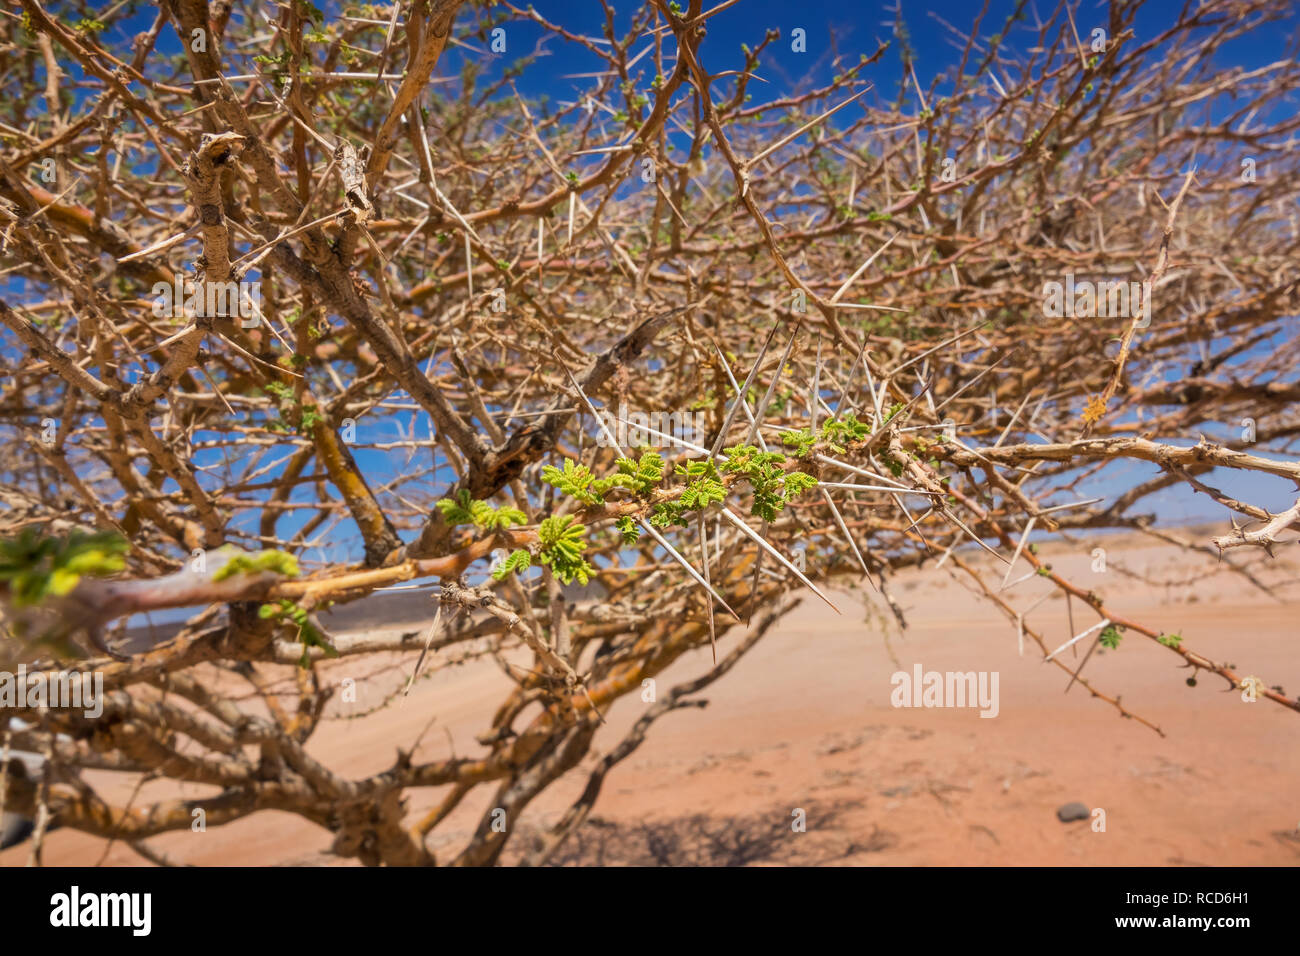 Nahaufnahme einer dornigen Baum mit grünen Blättern, die in der Wüste ist, westlichen Dschibuti. Stockfoto